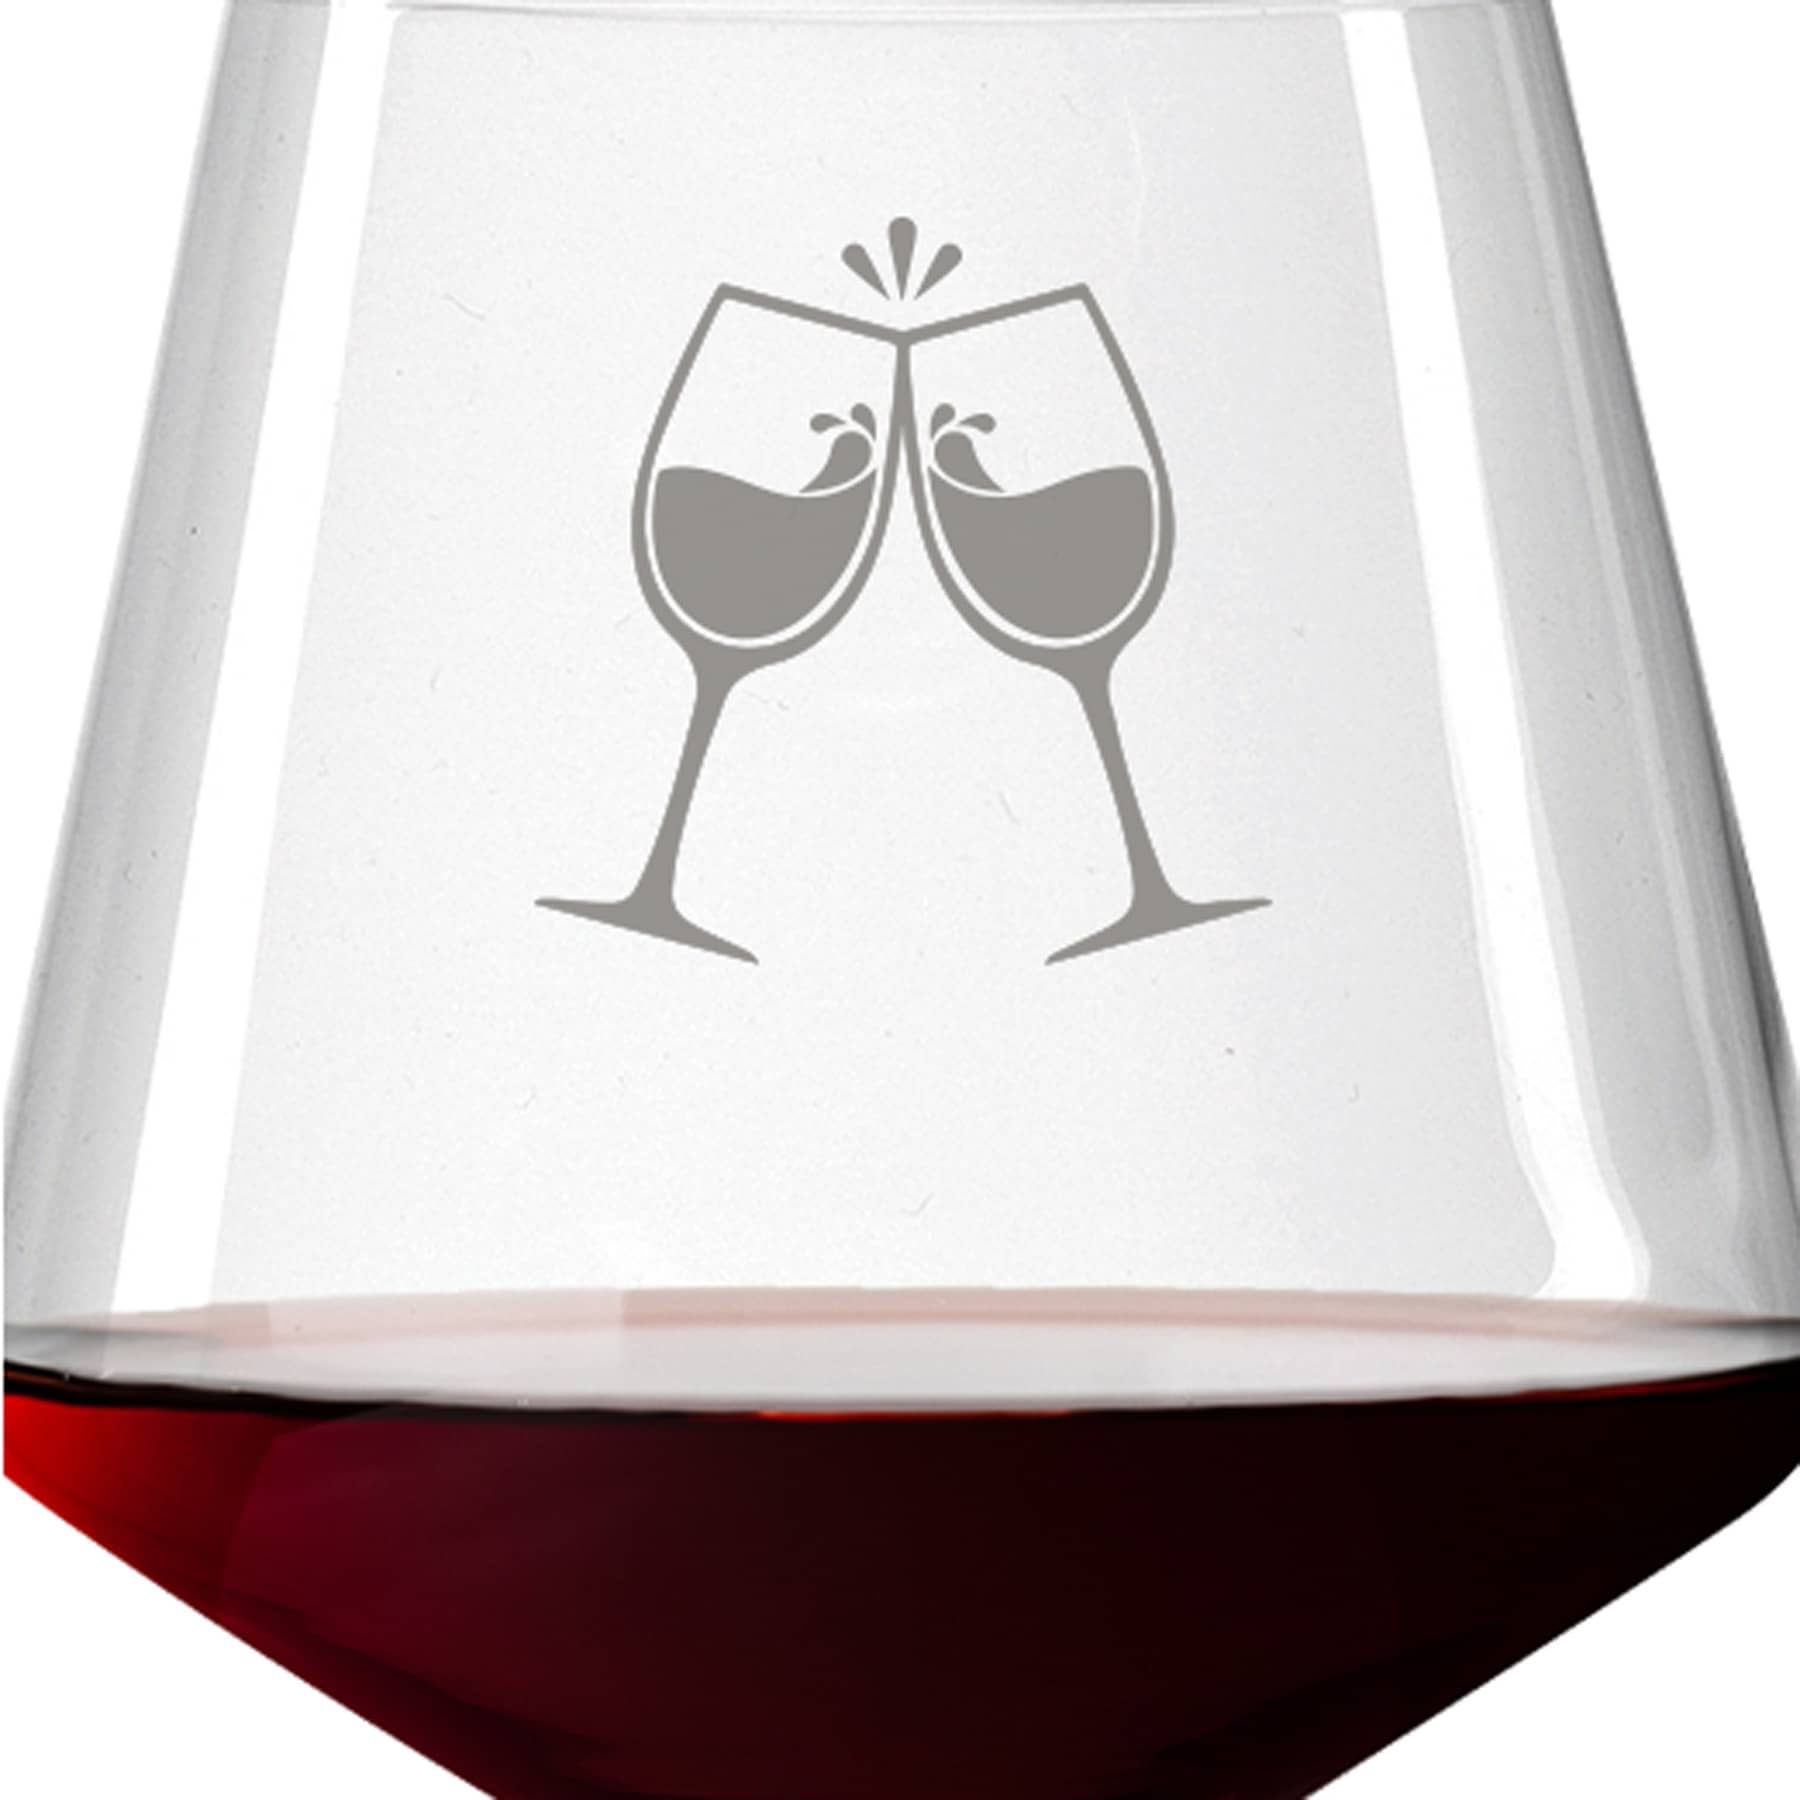 Leonardo Burgunderglas Rotweinglas PUCCINI 730ml mit Namen oder Wunschtext graviert (ChinChin)